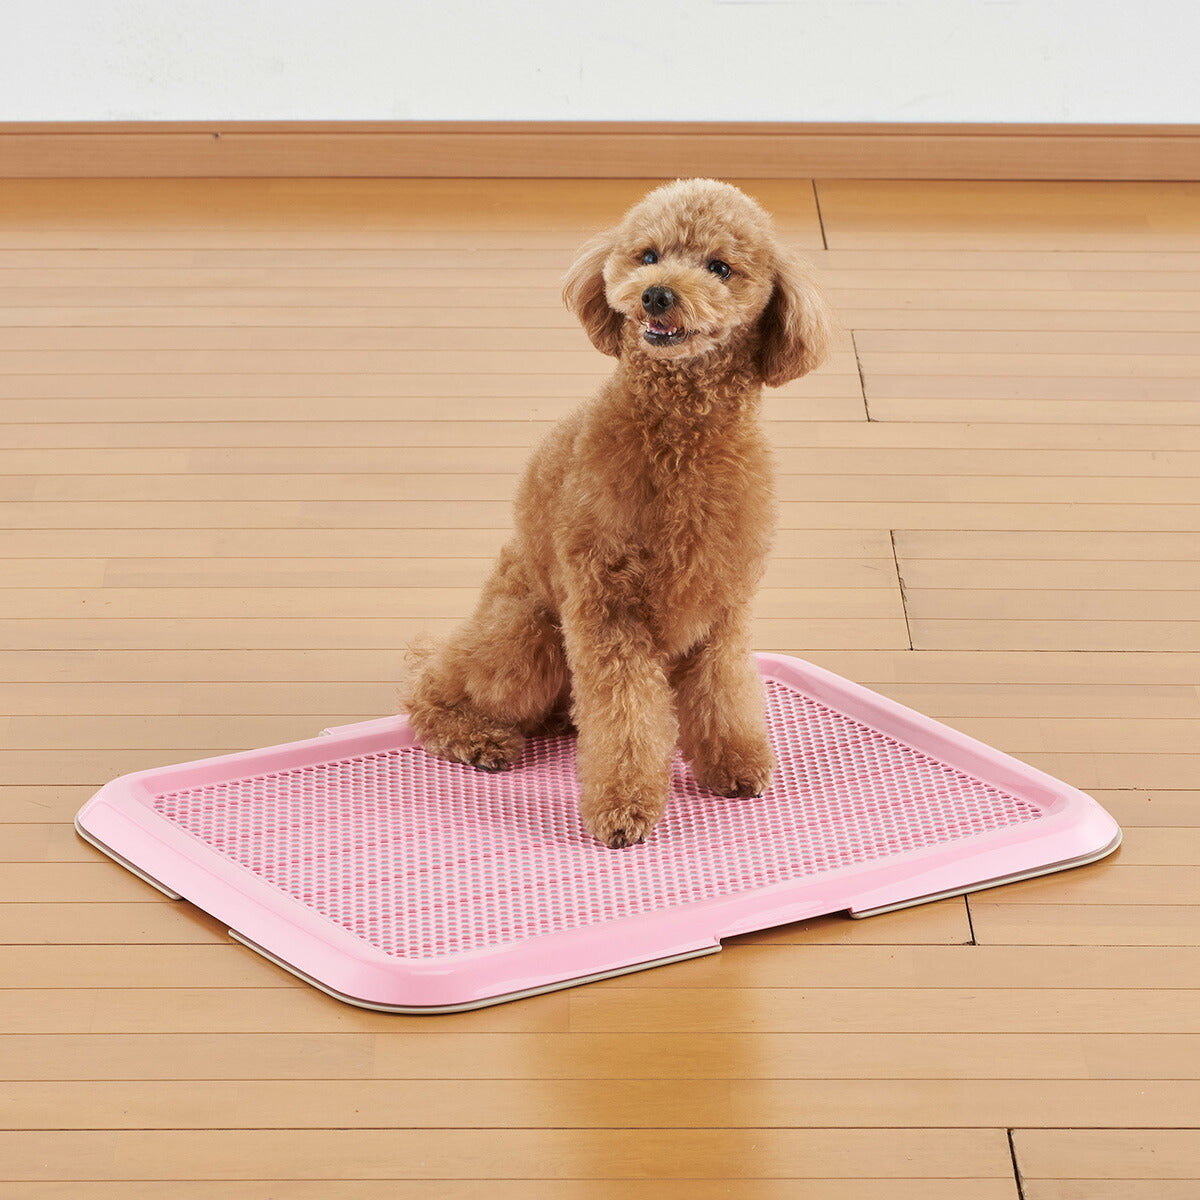 ボンビアルコン 薄型しつけるトレー M ピンク トイレトレー トイレトレーニング 犬用トイレ メッシュカバー